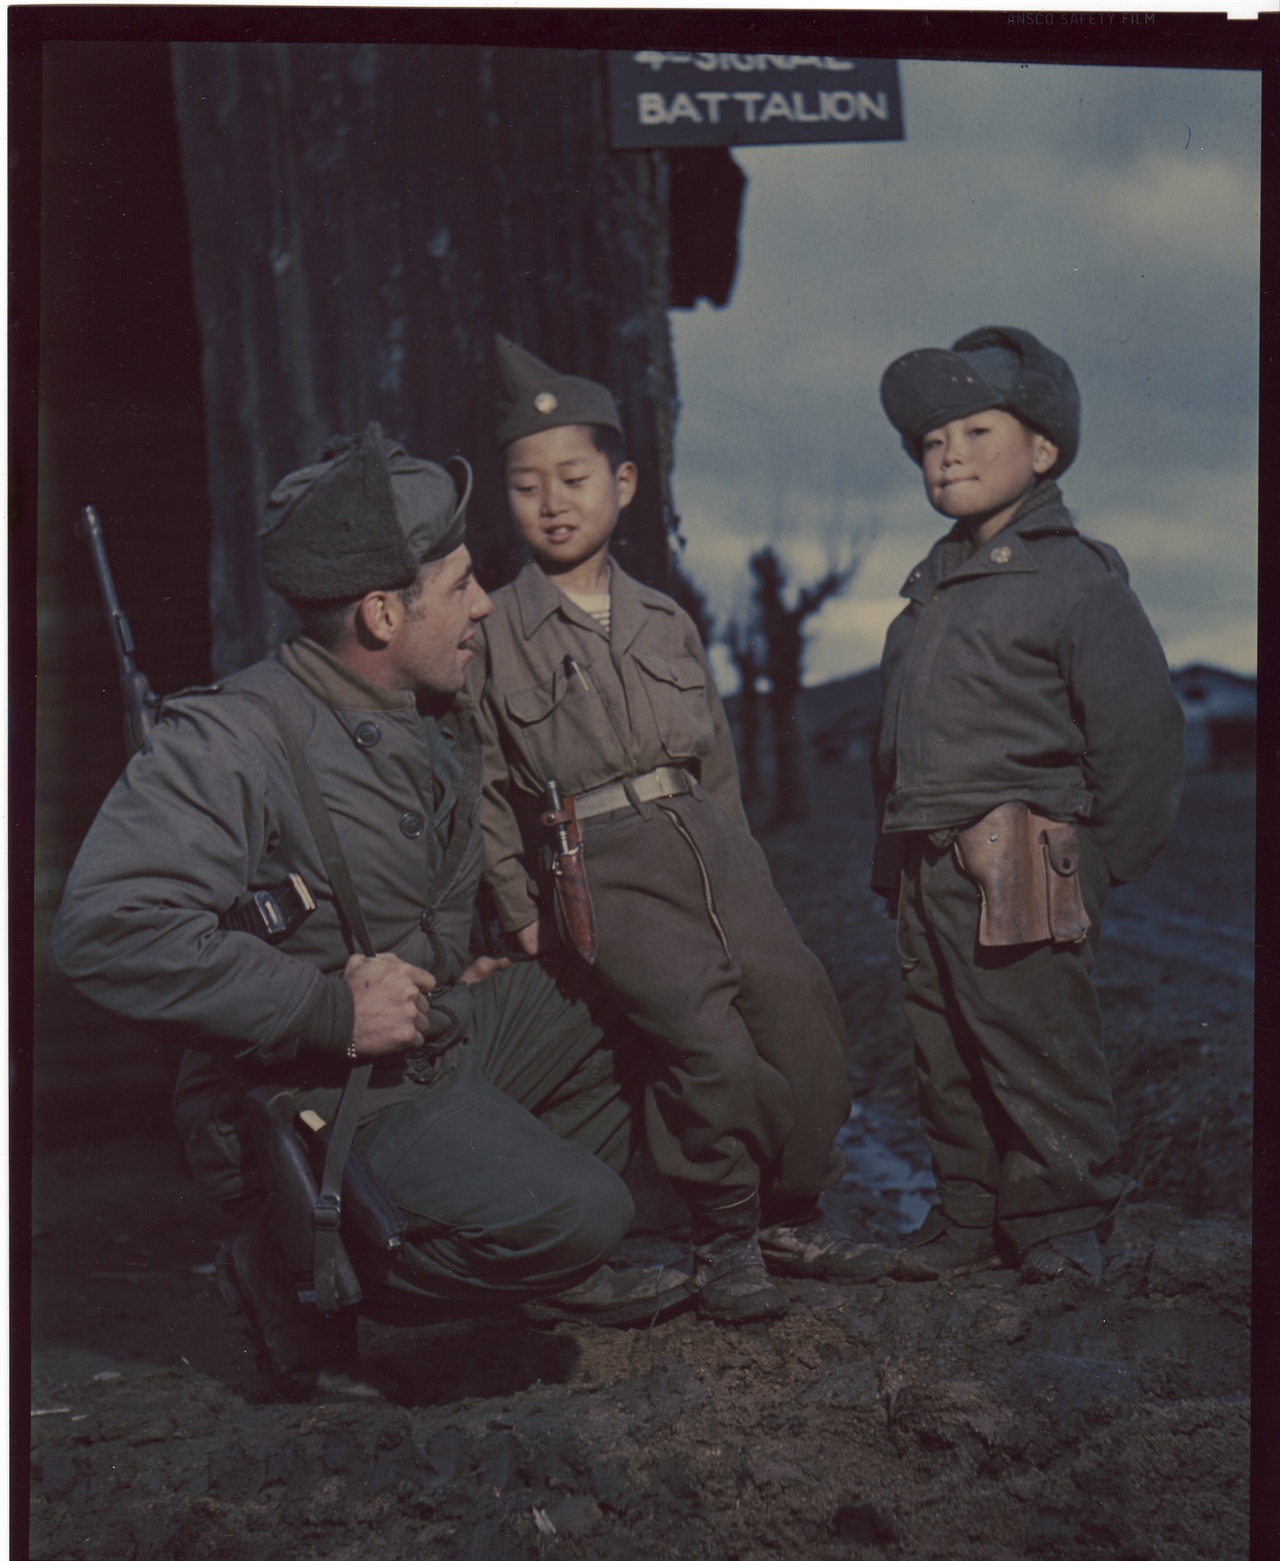 1951. 3. 1. 전주, 미군 부대에서 지내는 두 소년으로 그 무렵에는 이들을 ‘하우스보이’라고 불렀다. 이들 가운데는 입양되어 태평양을 건너기도 하였다.